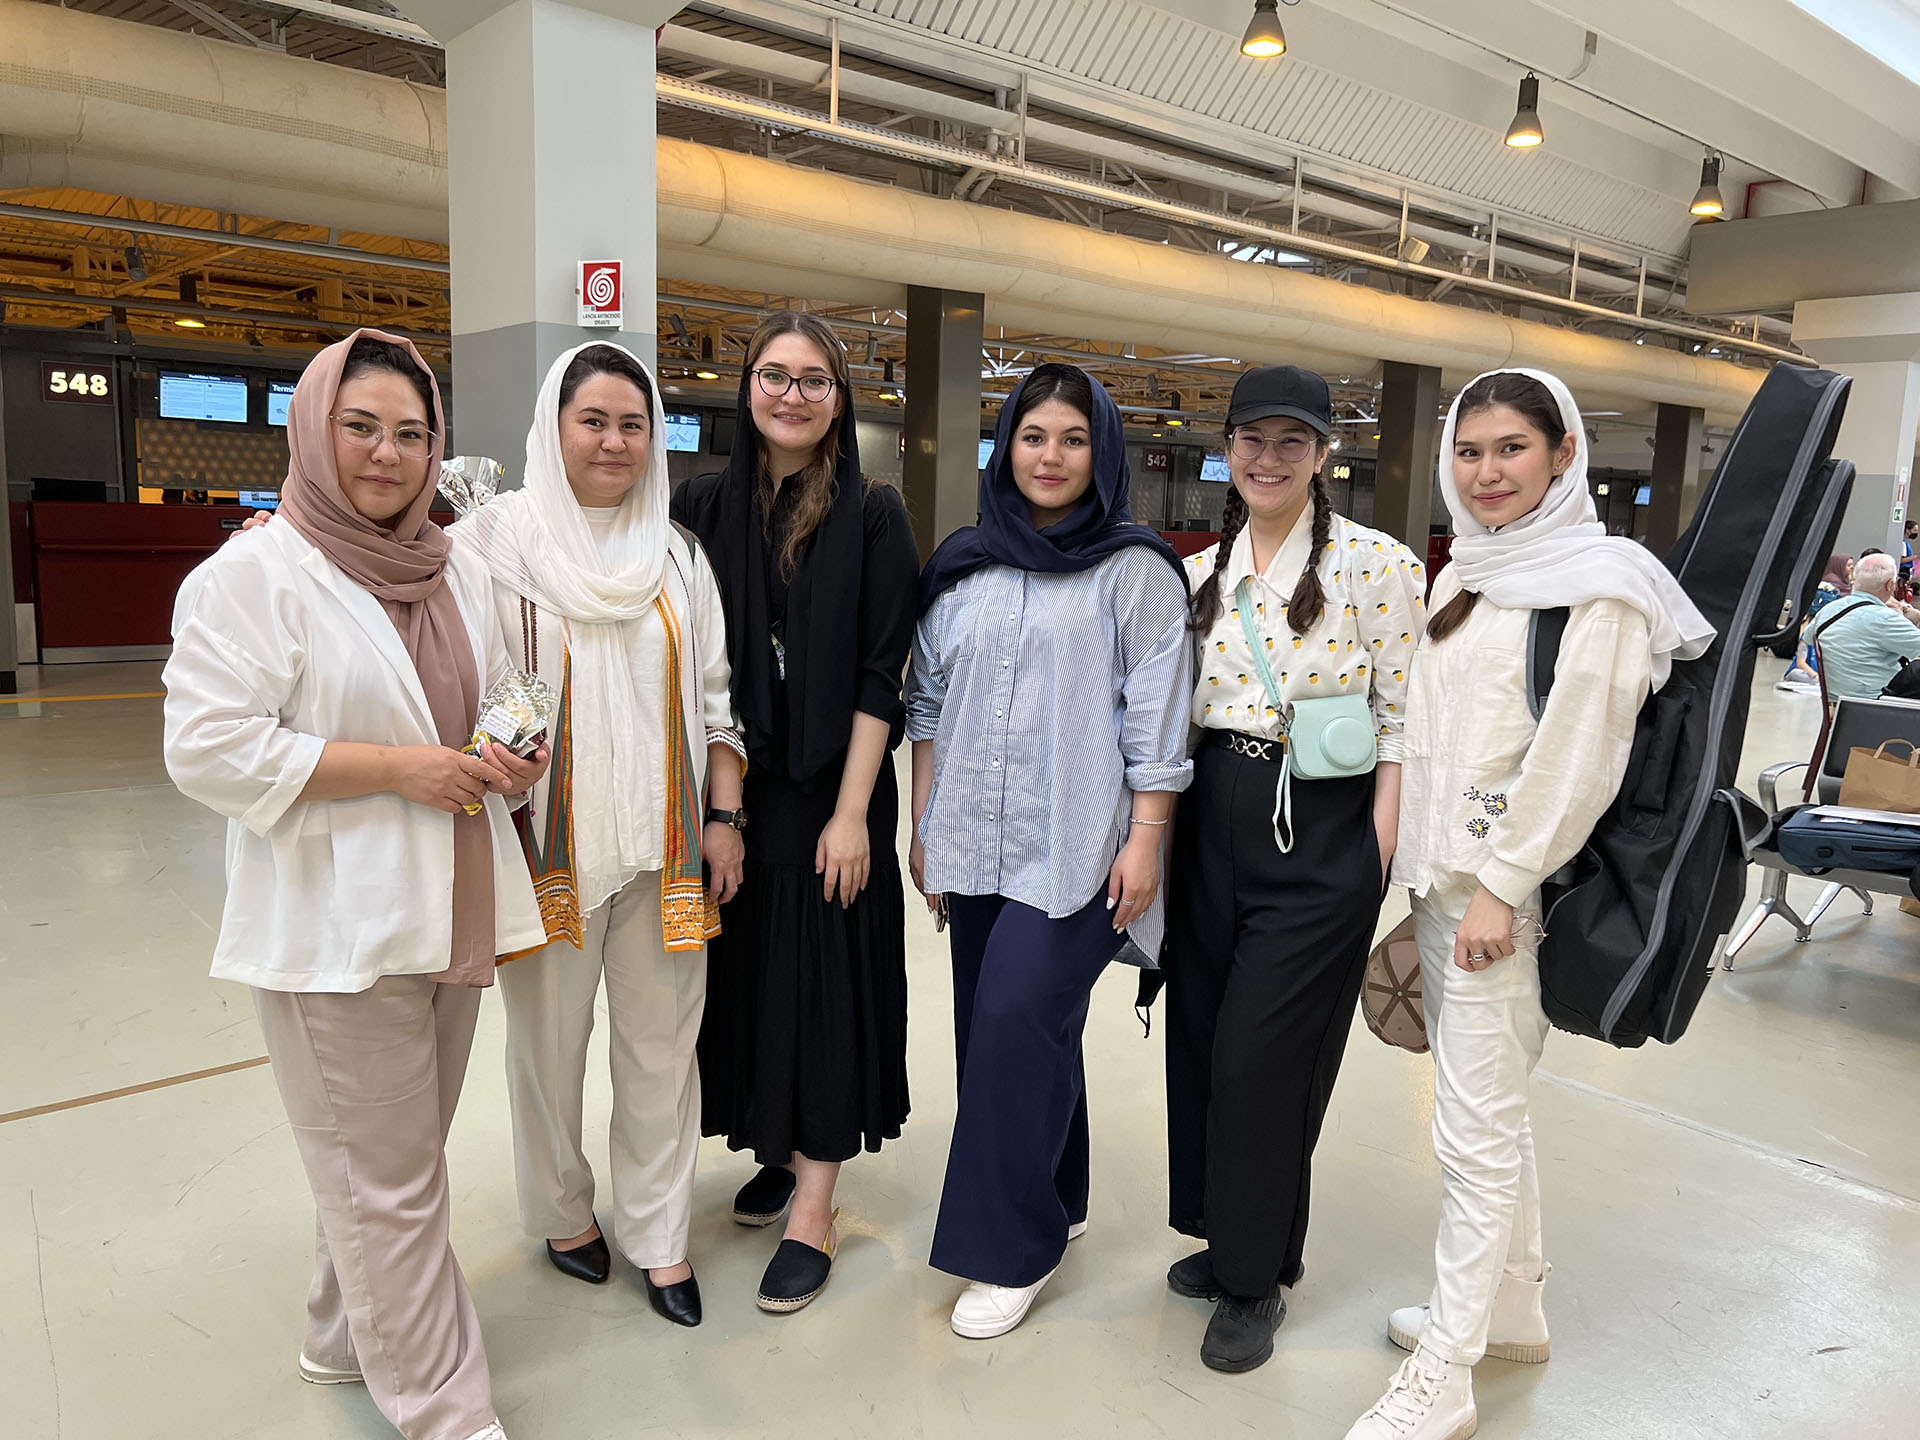 Junto a las cinco hermanas que viajaron de Islamabad a Roma. Son siete mujeres y un varón. Su padre era un militar de alto rango del ejército afgano